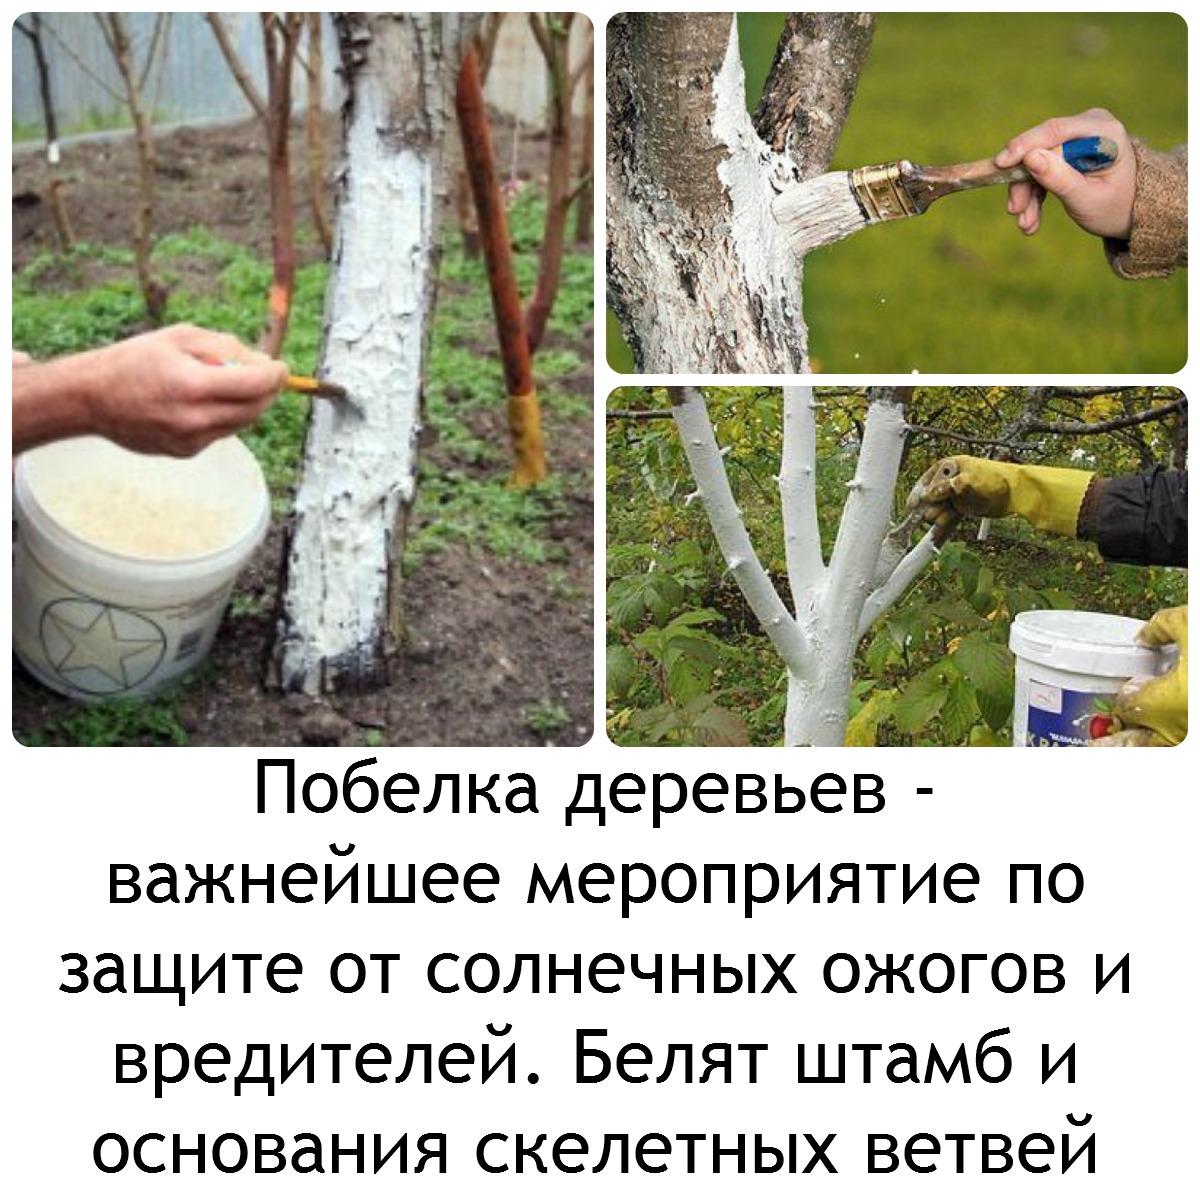 инструкция по побелке деревьев